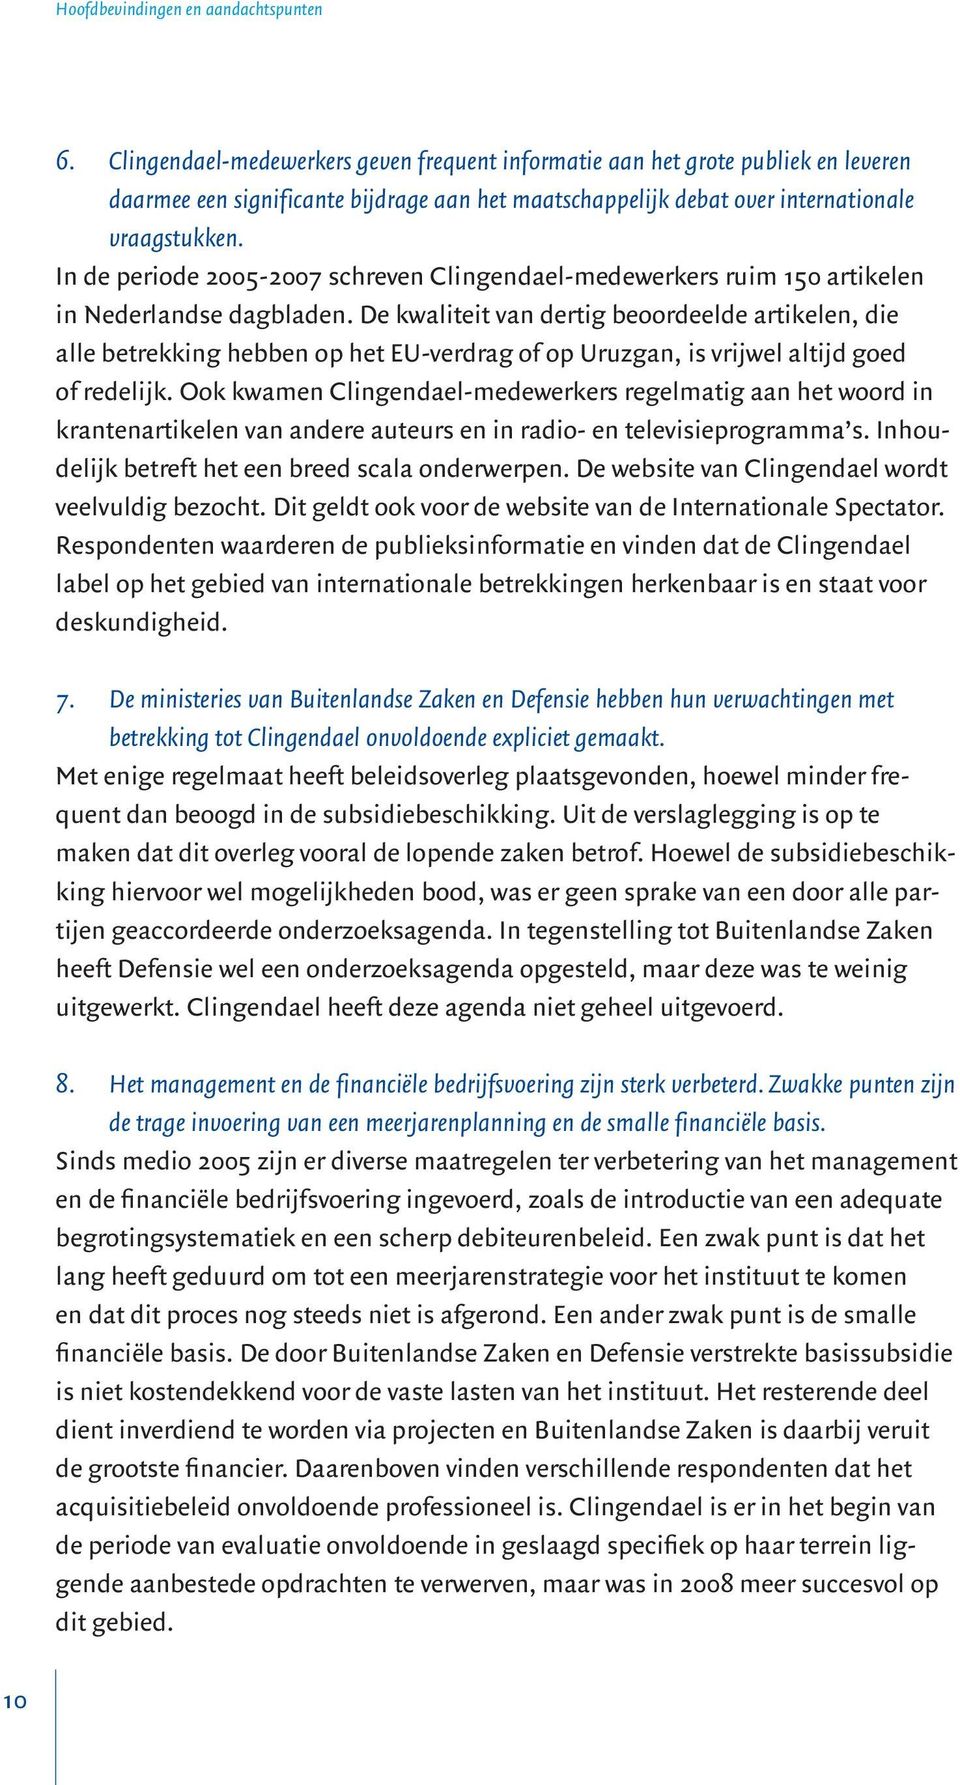 In de periode 2005-2007 schreven Clingendael-medewerkers ruim 150 artikelen in Nederlandse dagbladen.